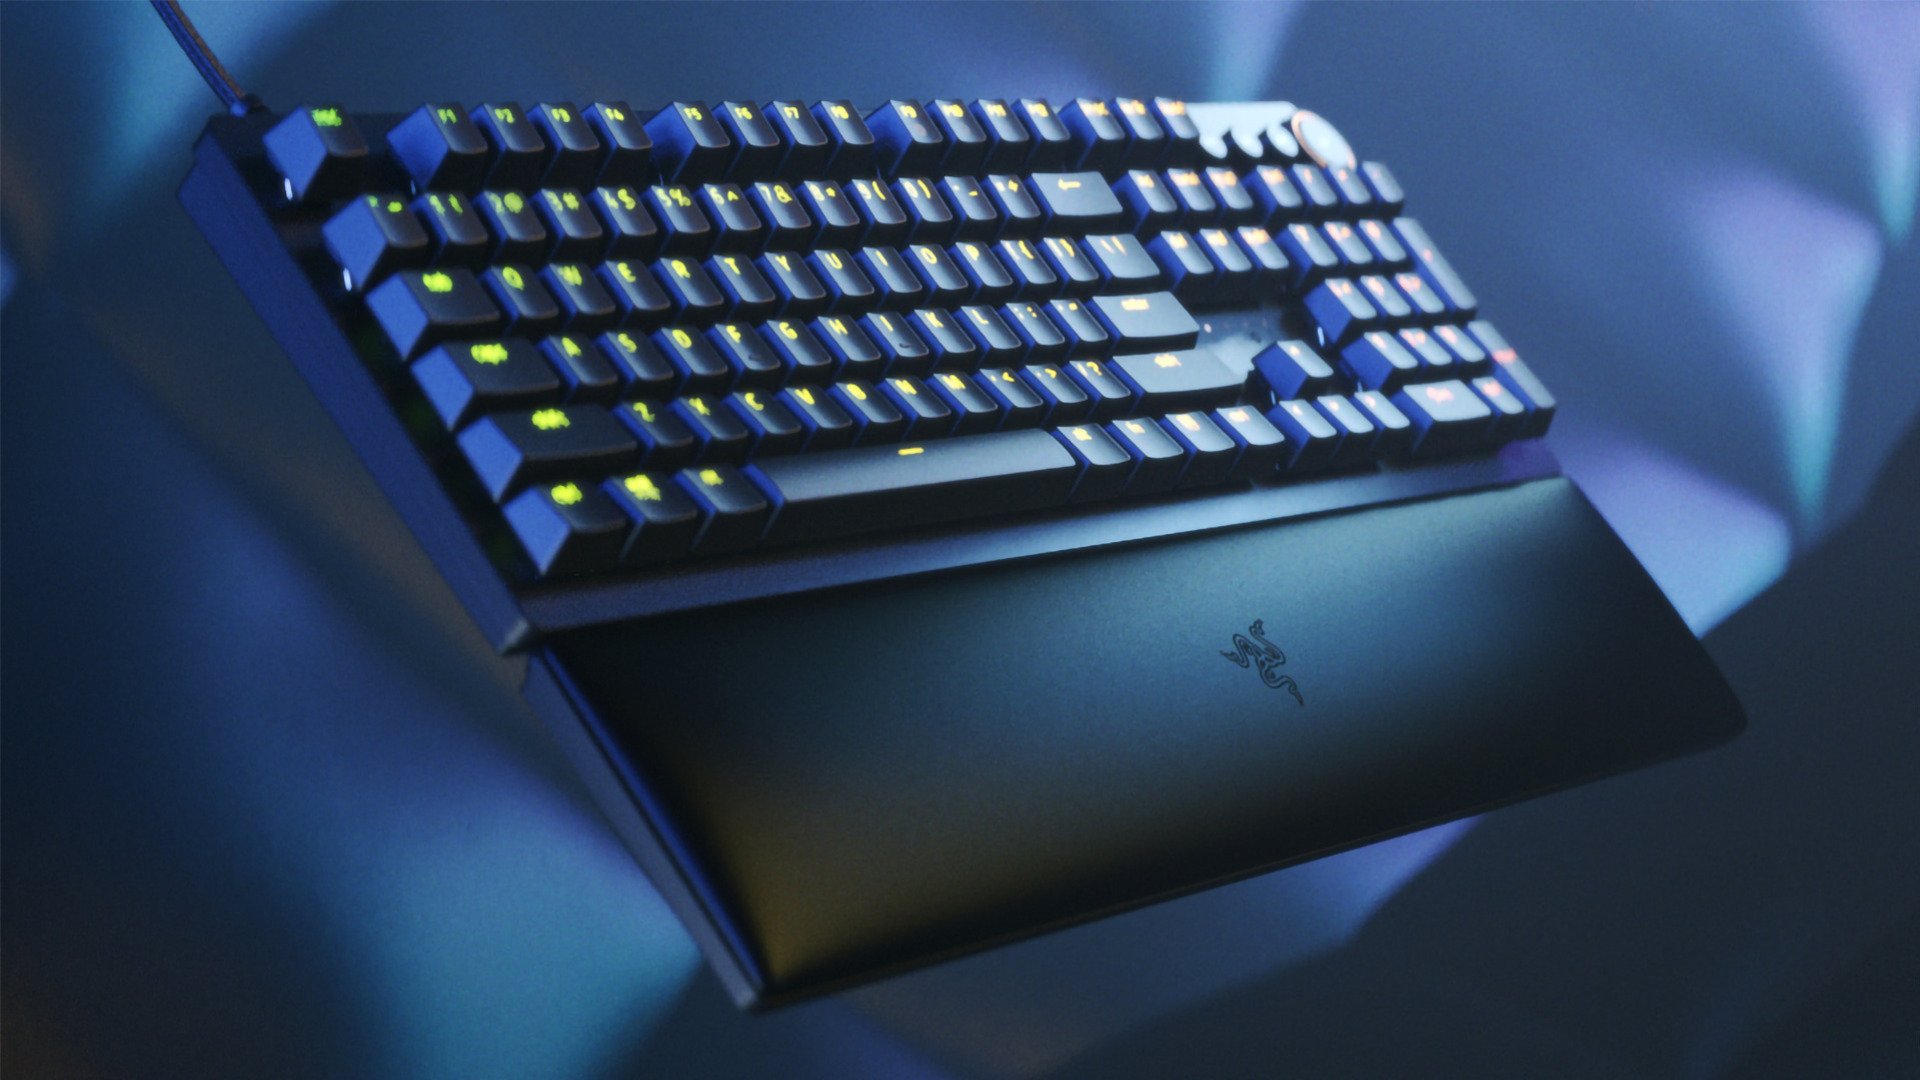 Razer Huntsman V2: a new gaming keyboard based on ‘silencers’